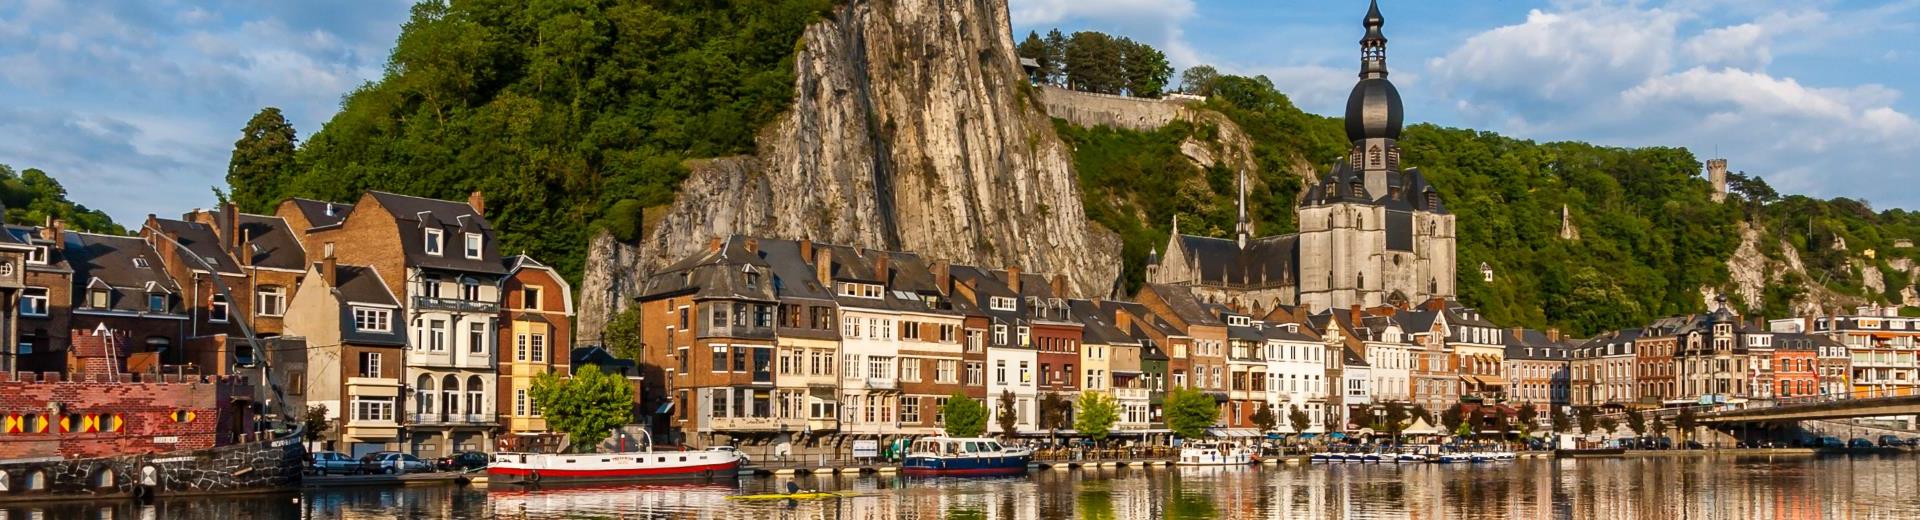 Ferienwohnungen & Ferienhäuser für Urlaub in der Provinz Namur - Casamundo